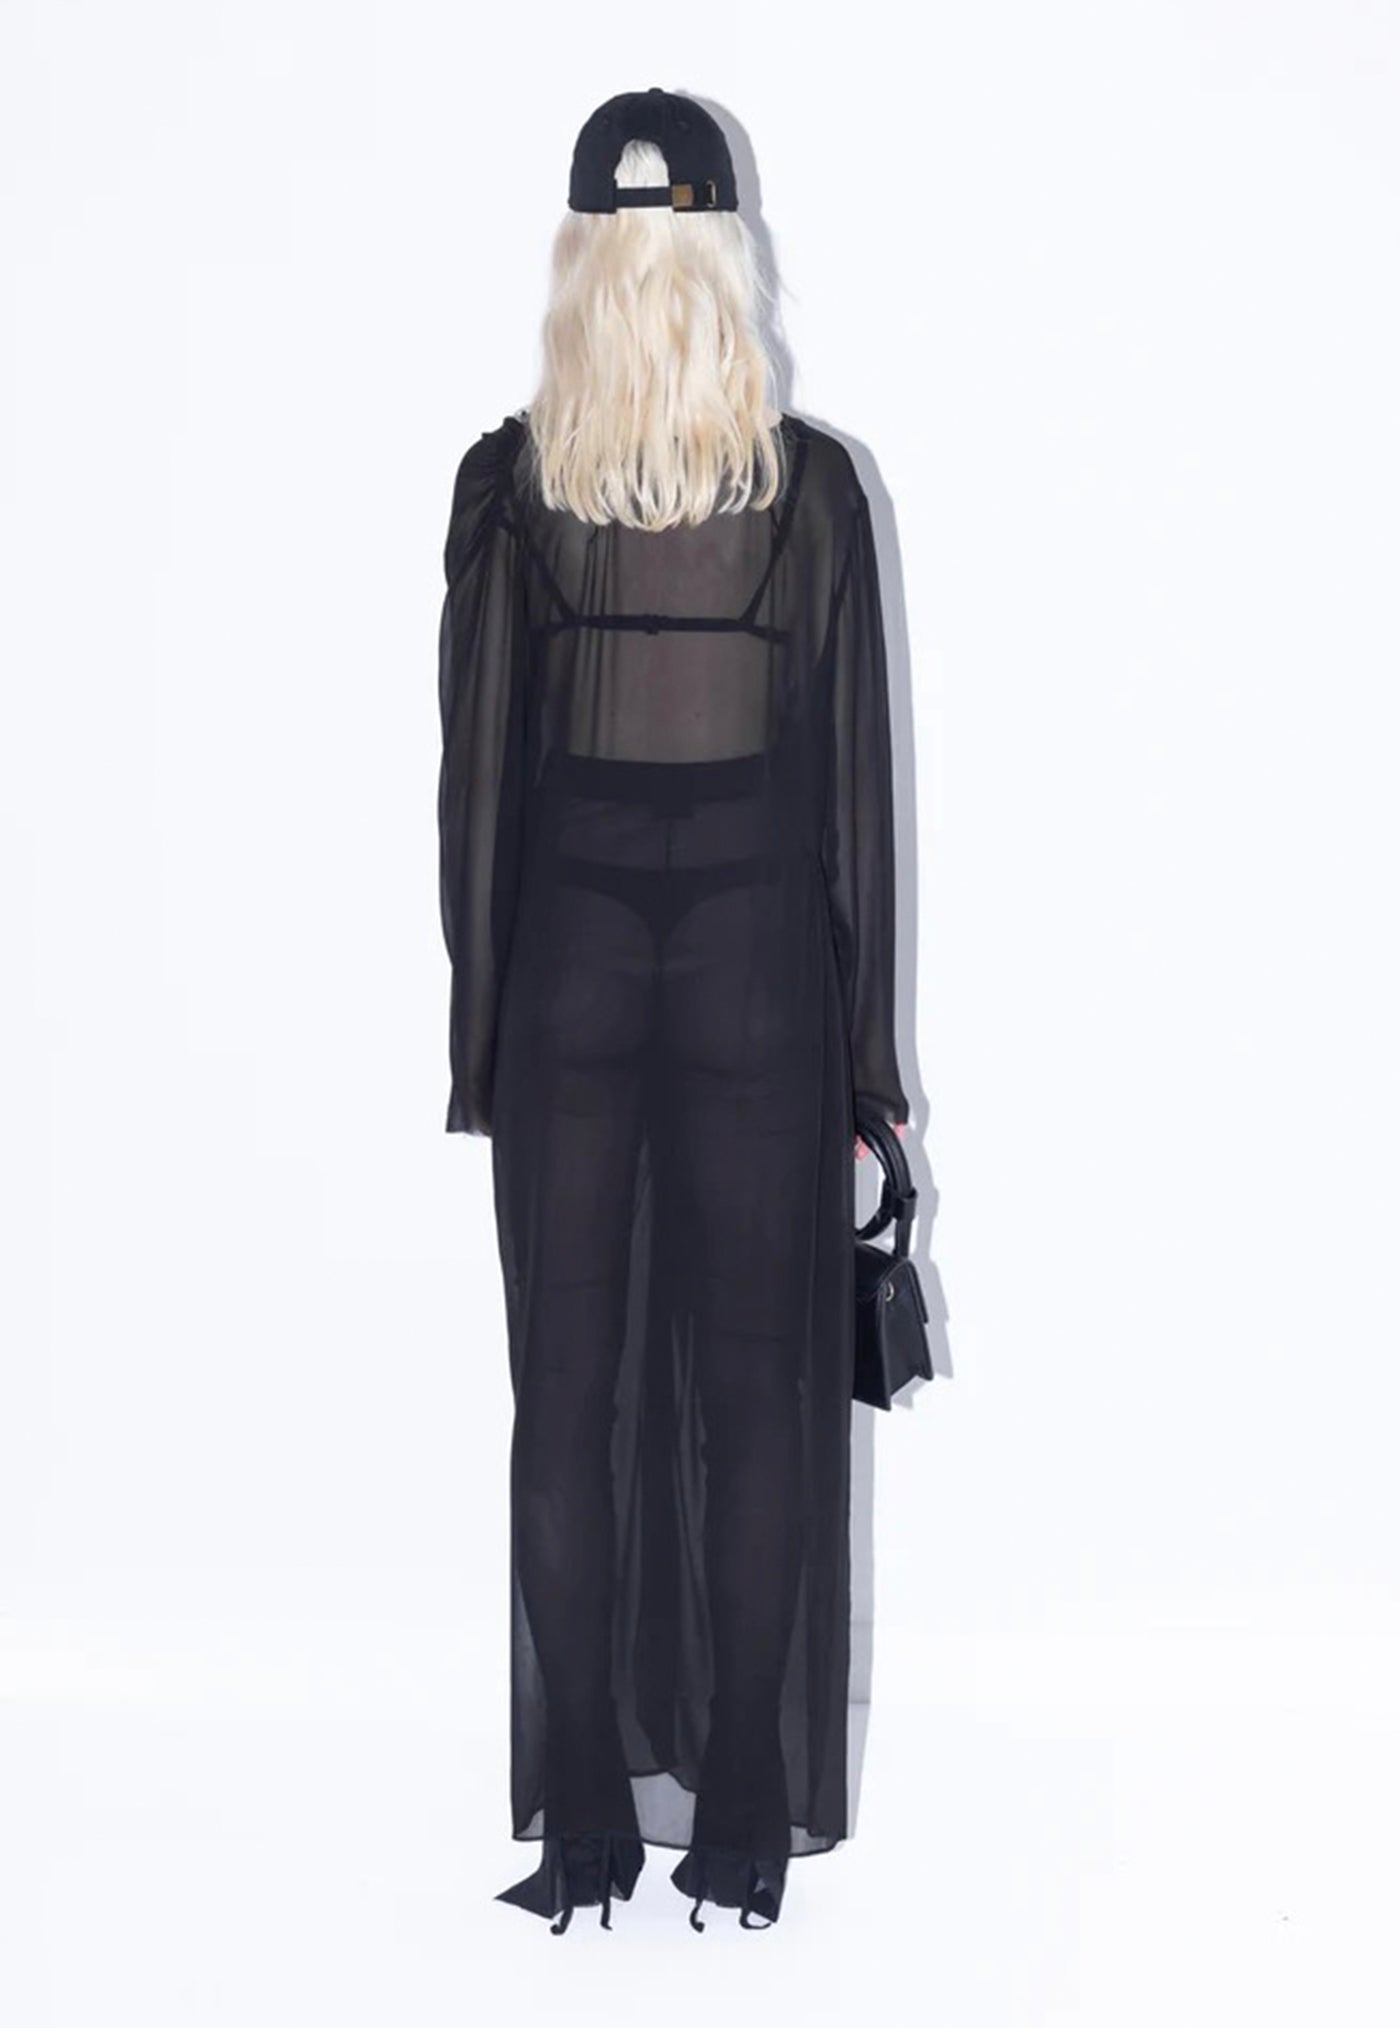 Limelight Dress - Black sold by Angel Divine